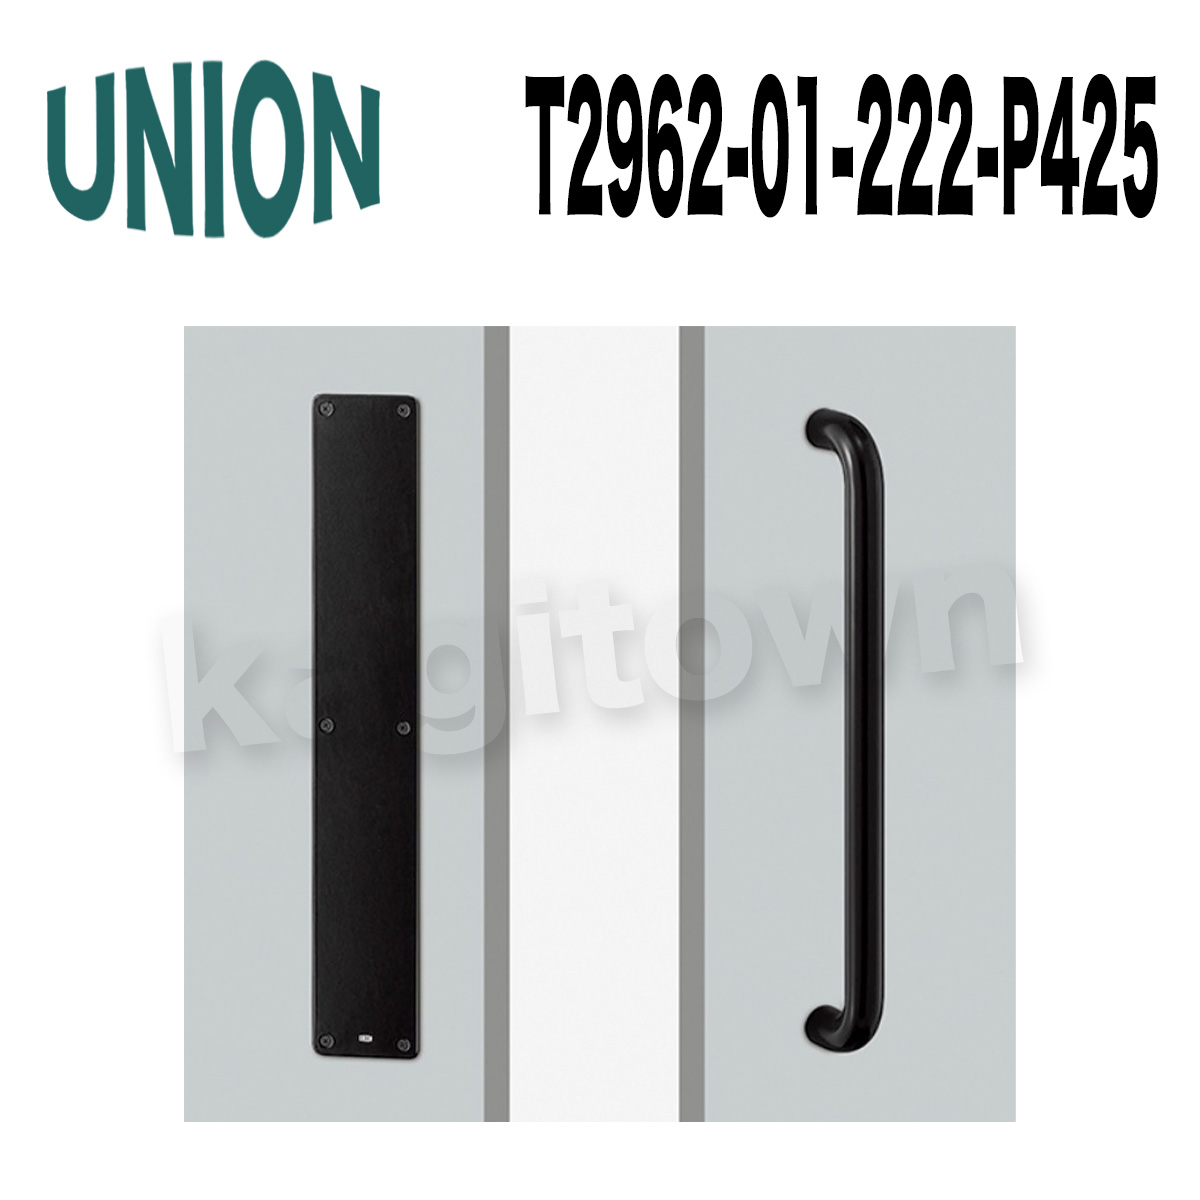 UNION【ユニオン】T2962-01-003-P190[ドアハンドル]プレート 1セット